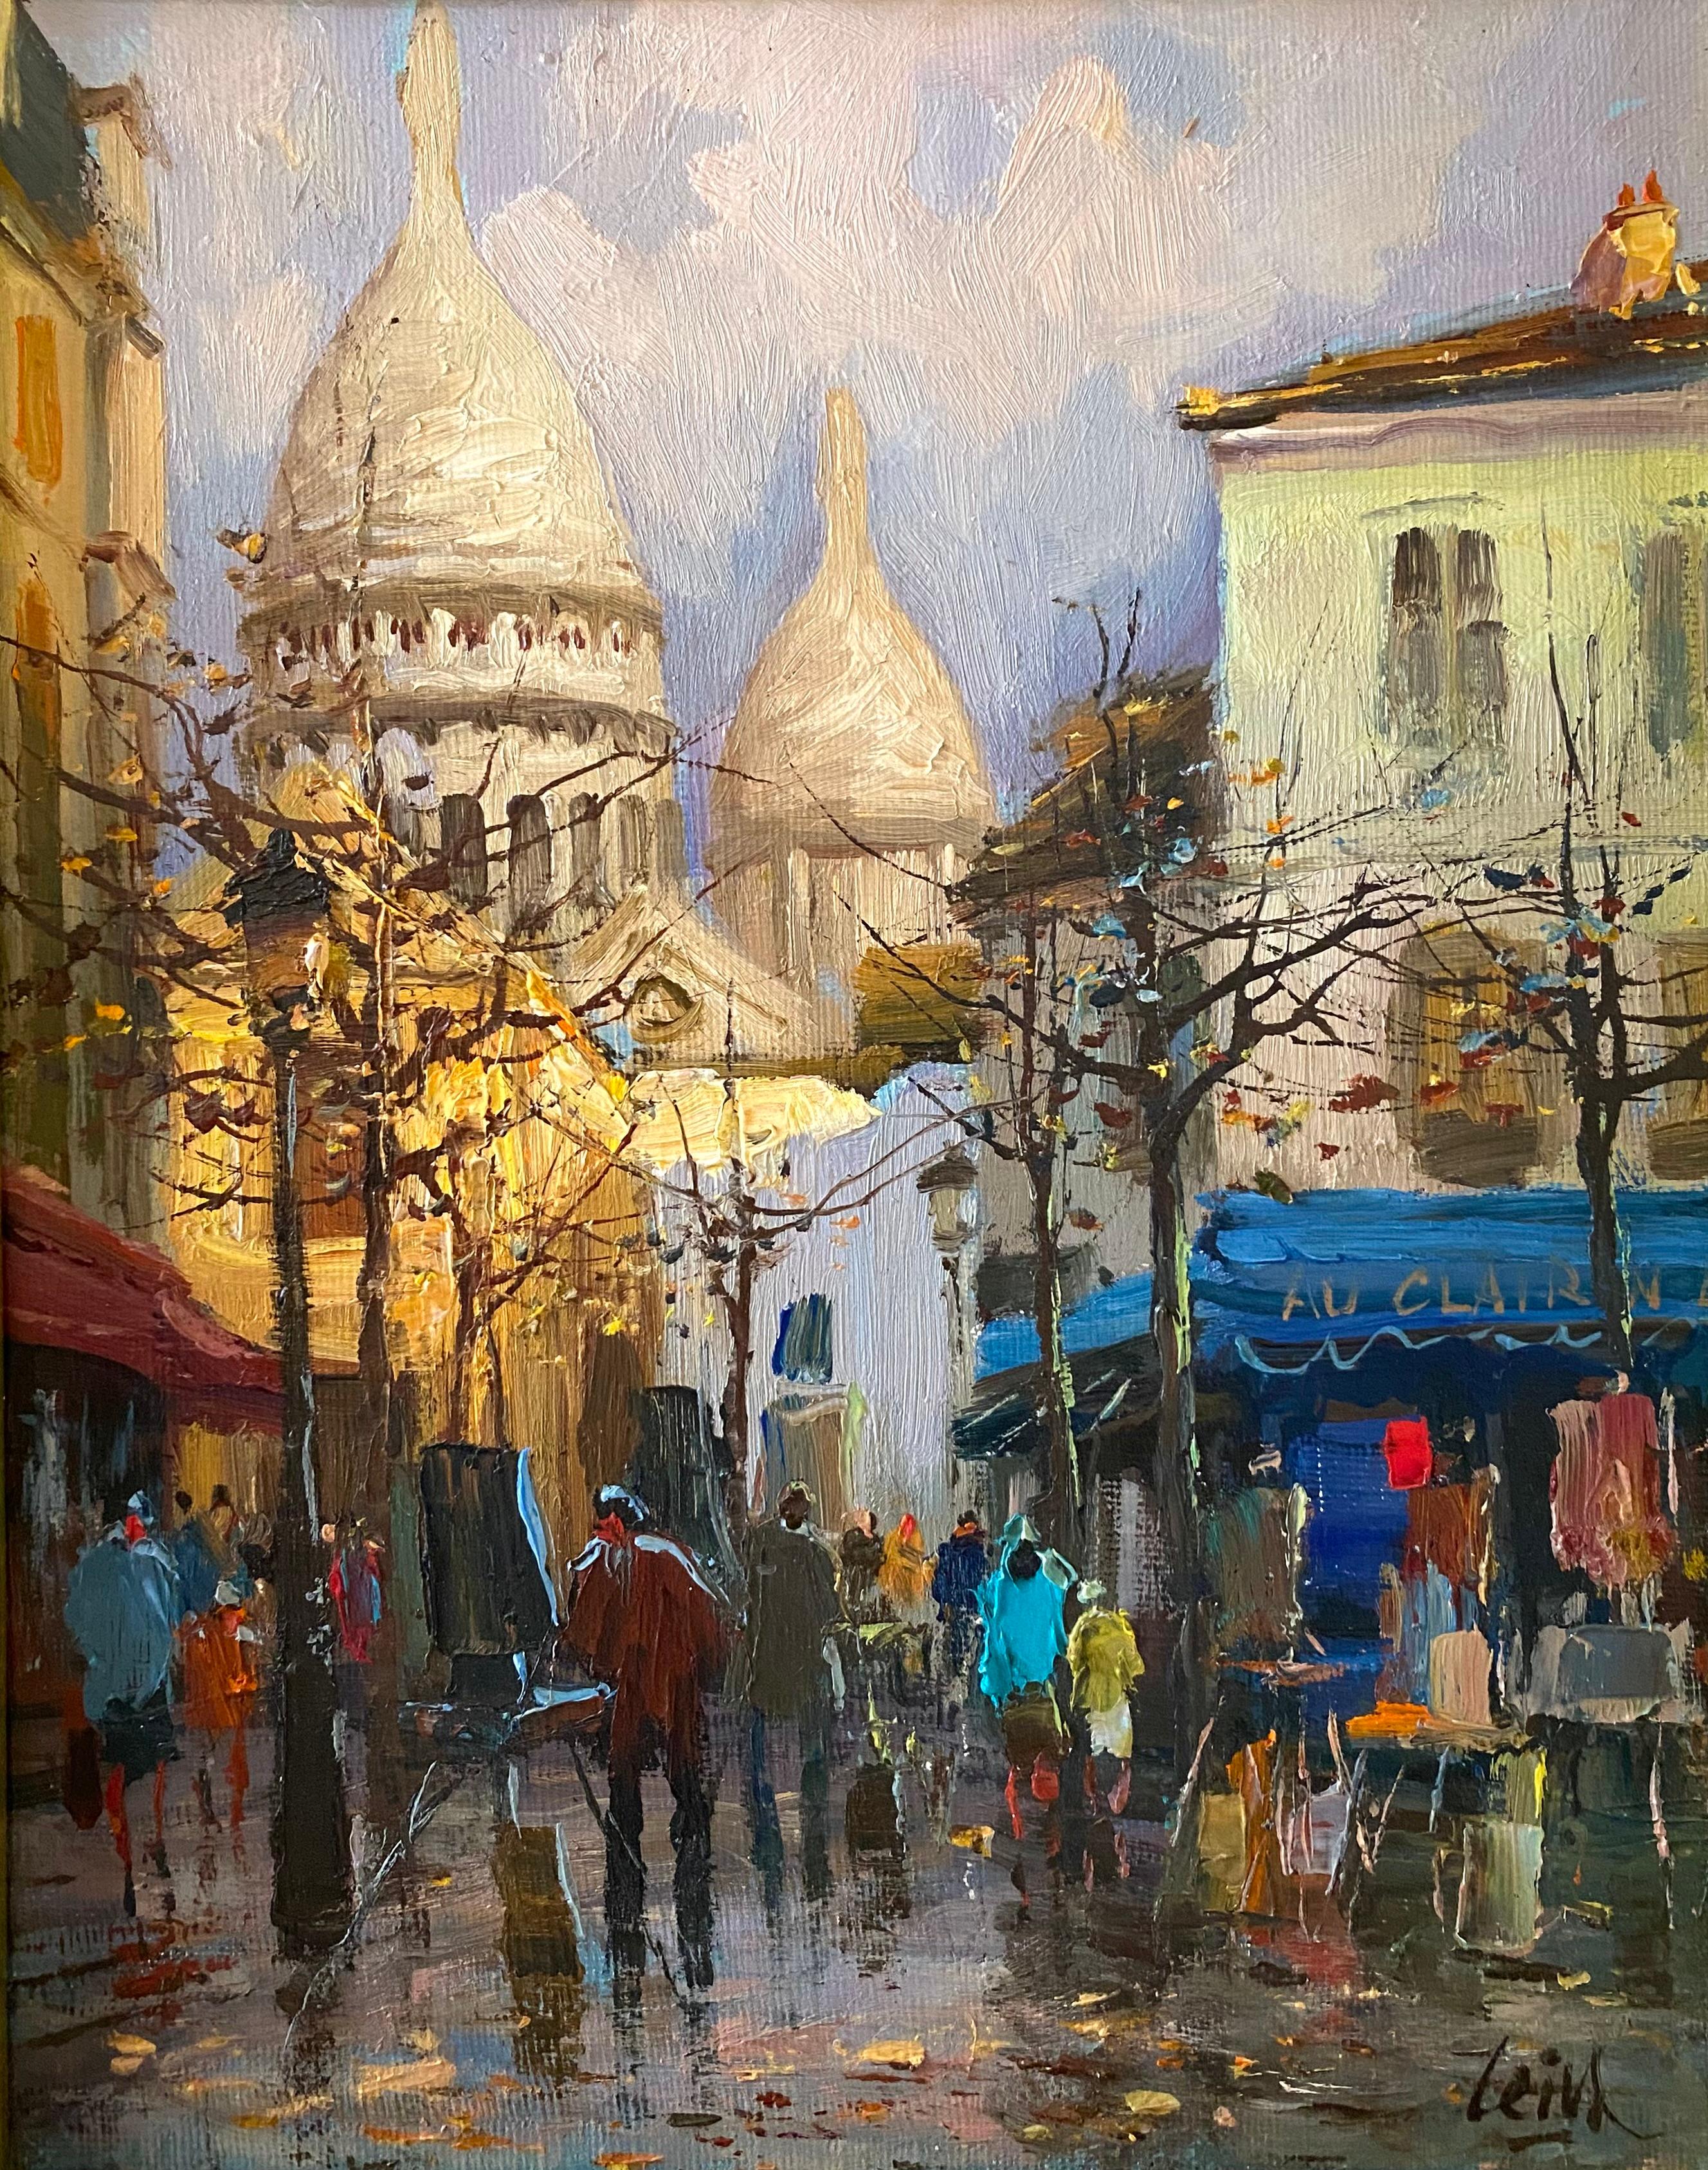 “Place du Tertre,  Montmartre, Paris” - Painting by Jose Luis Leiva Sanchez